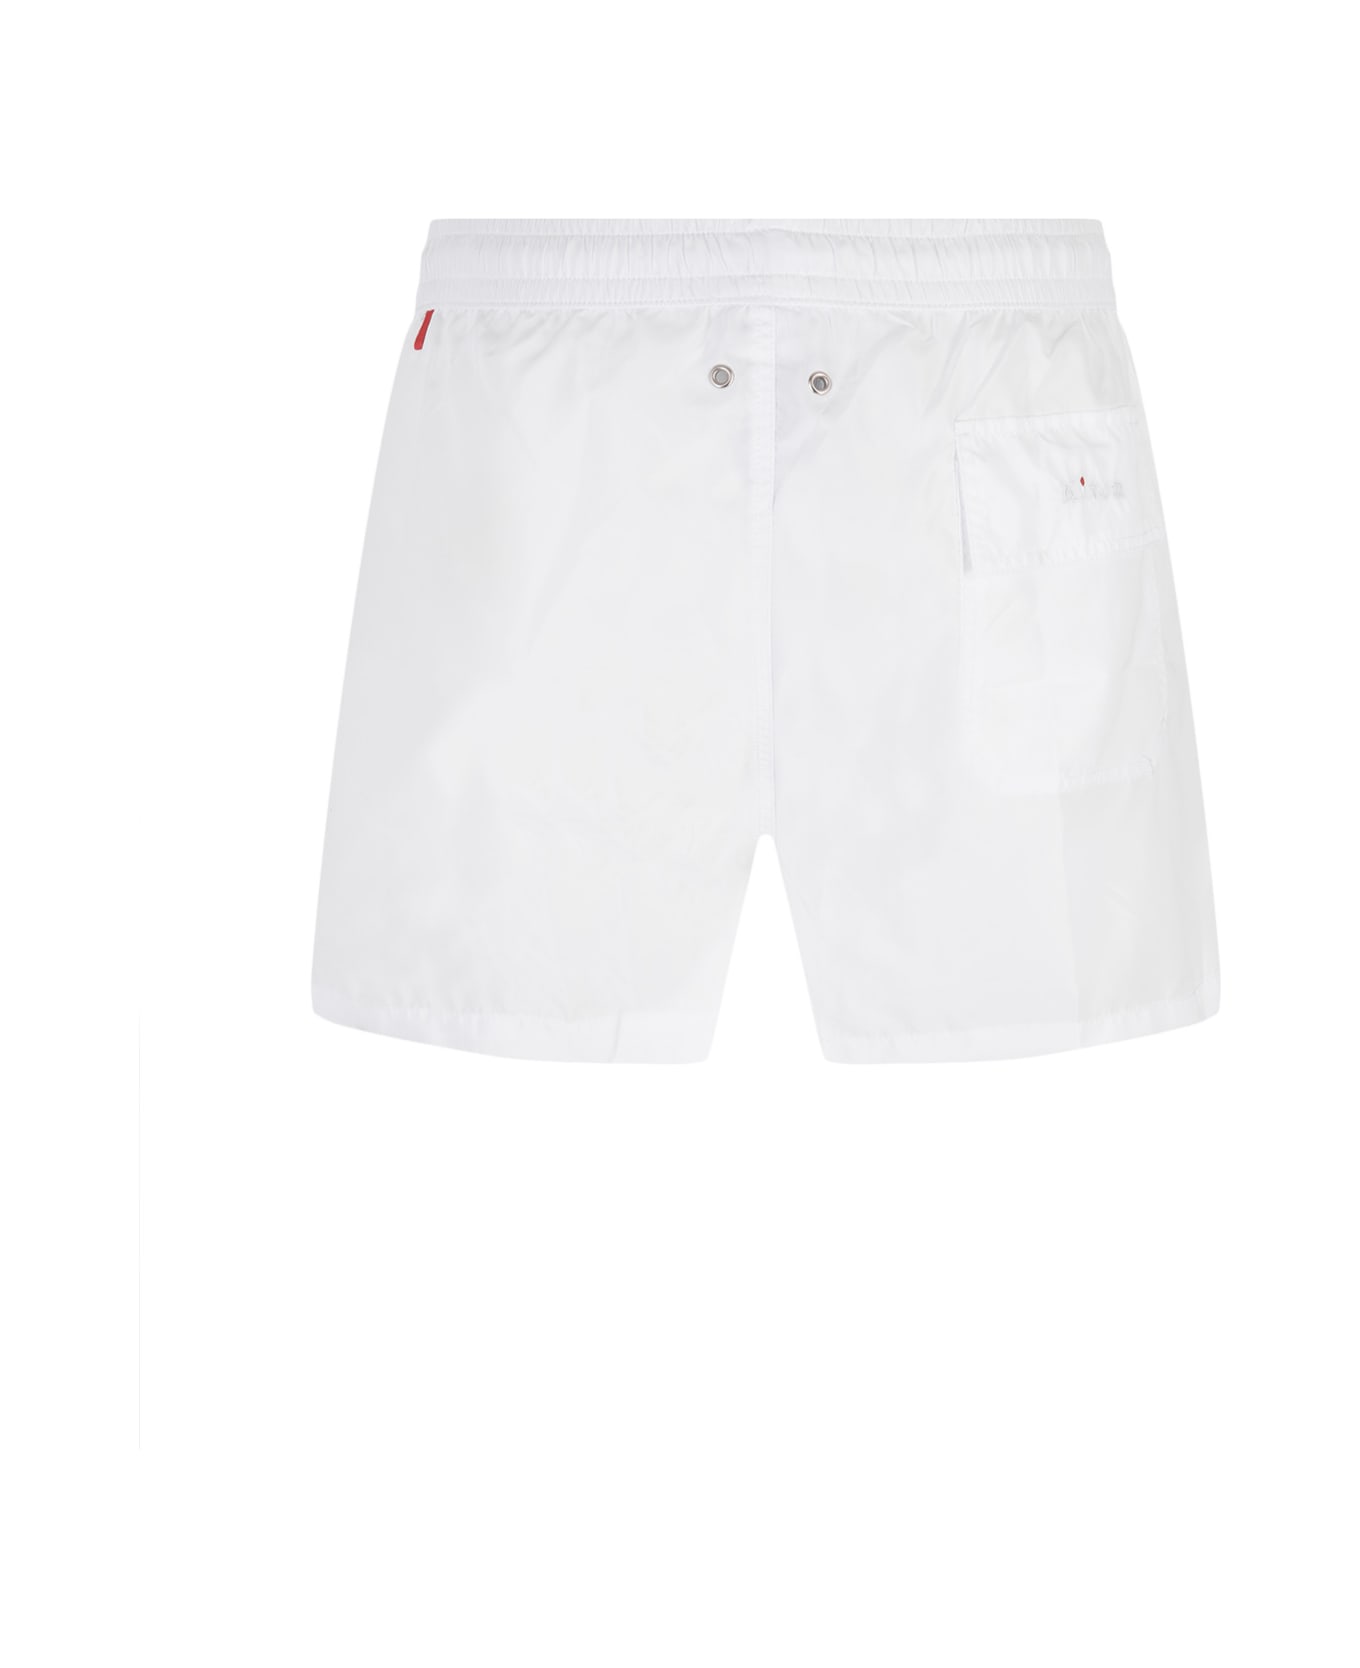 Kiton White Swim Shorts - White